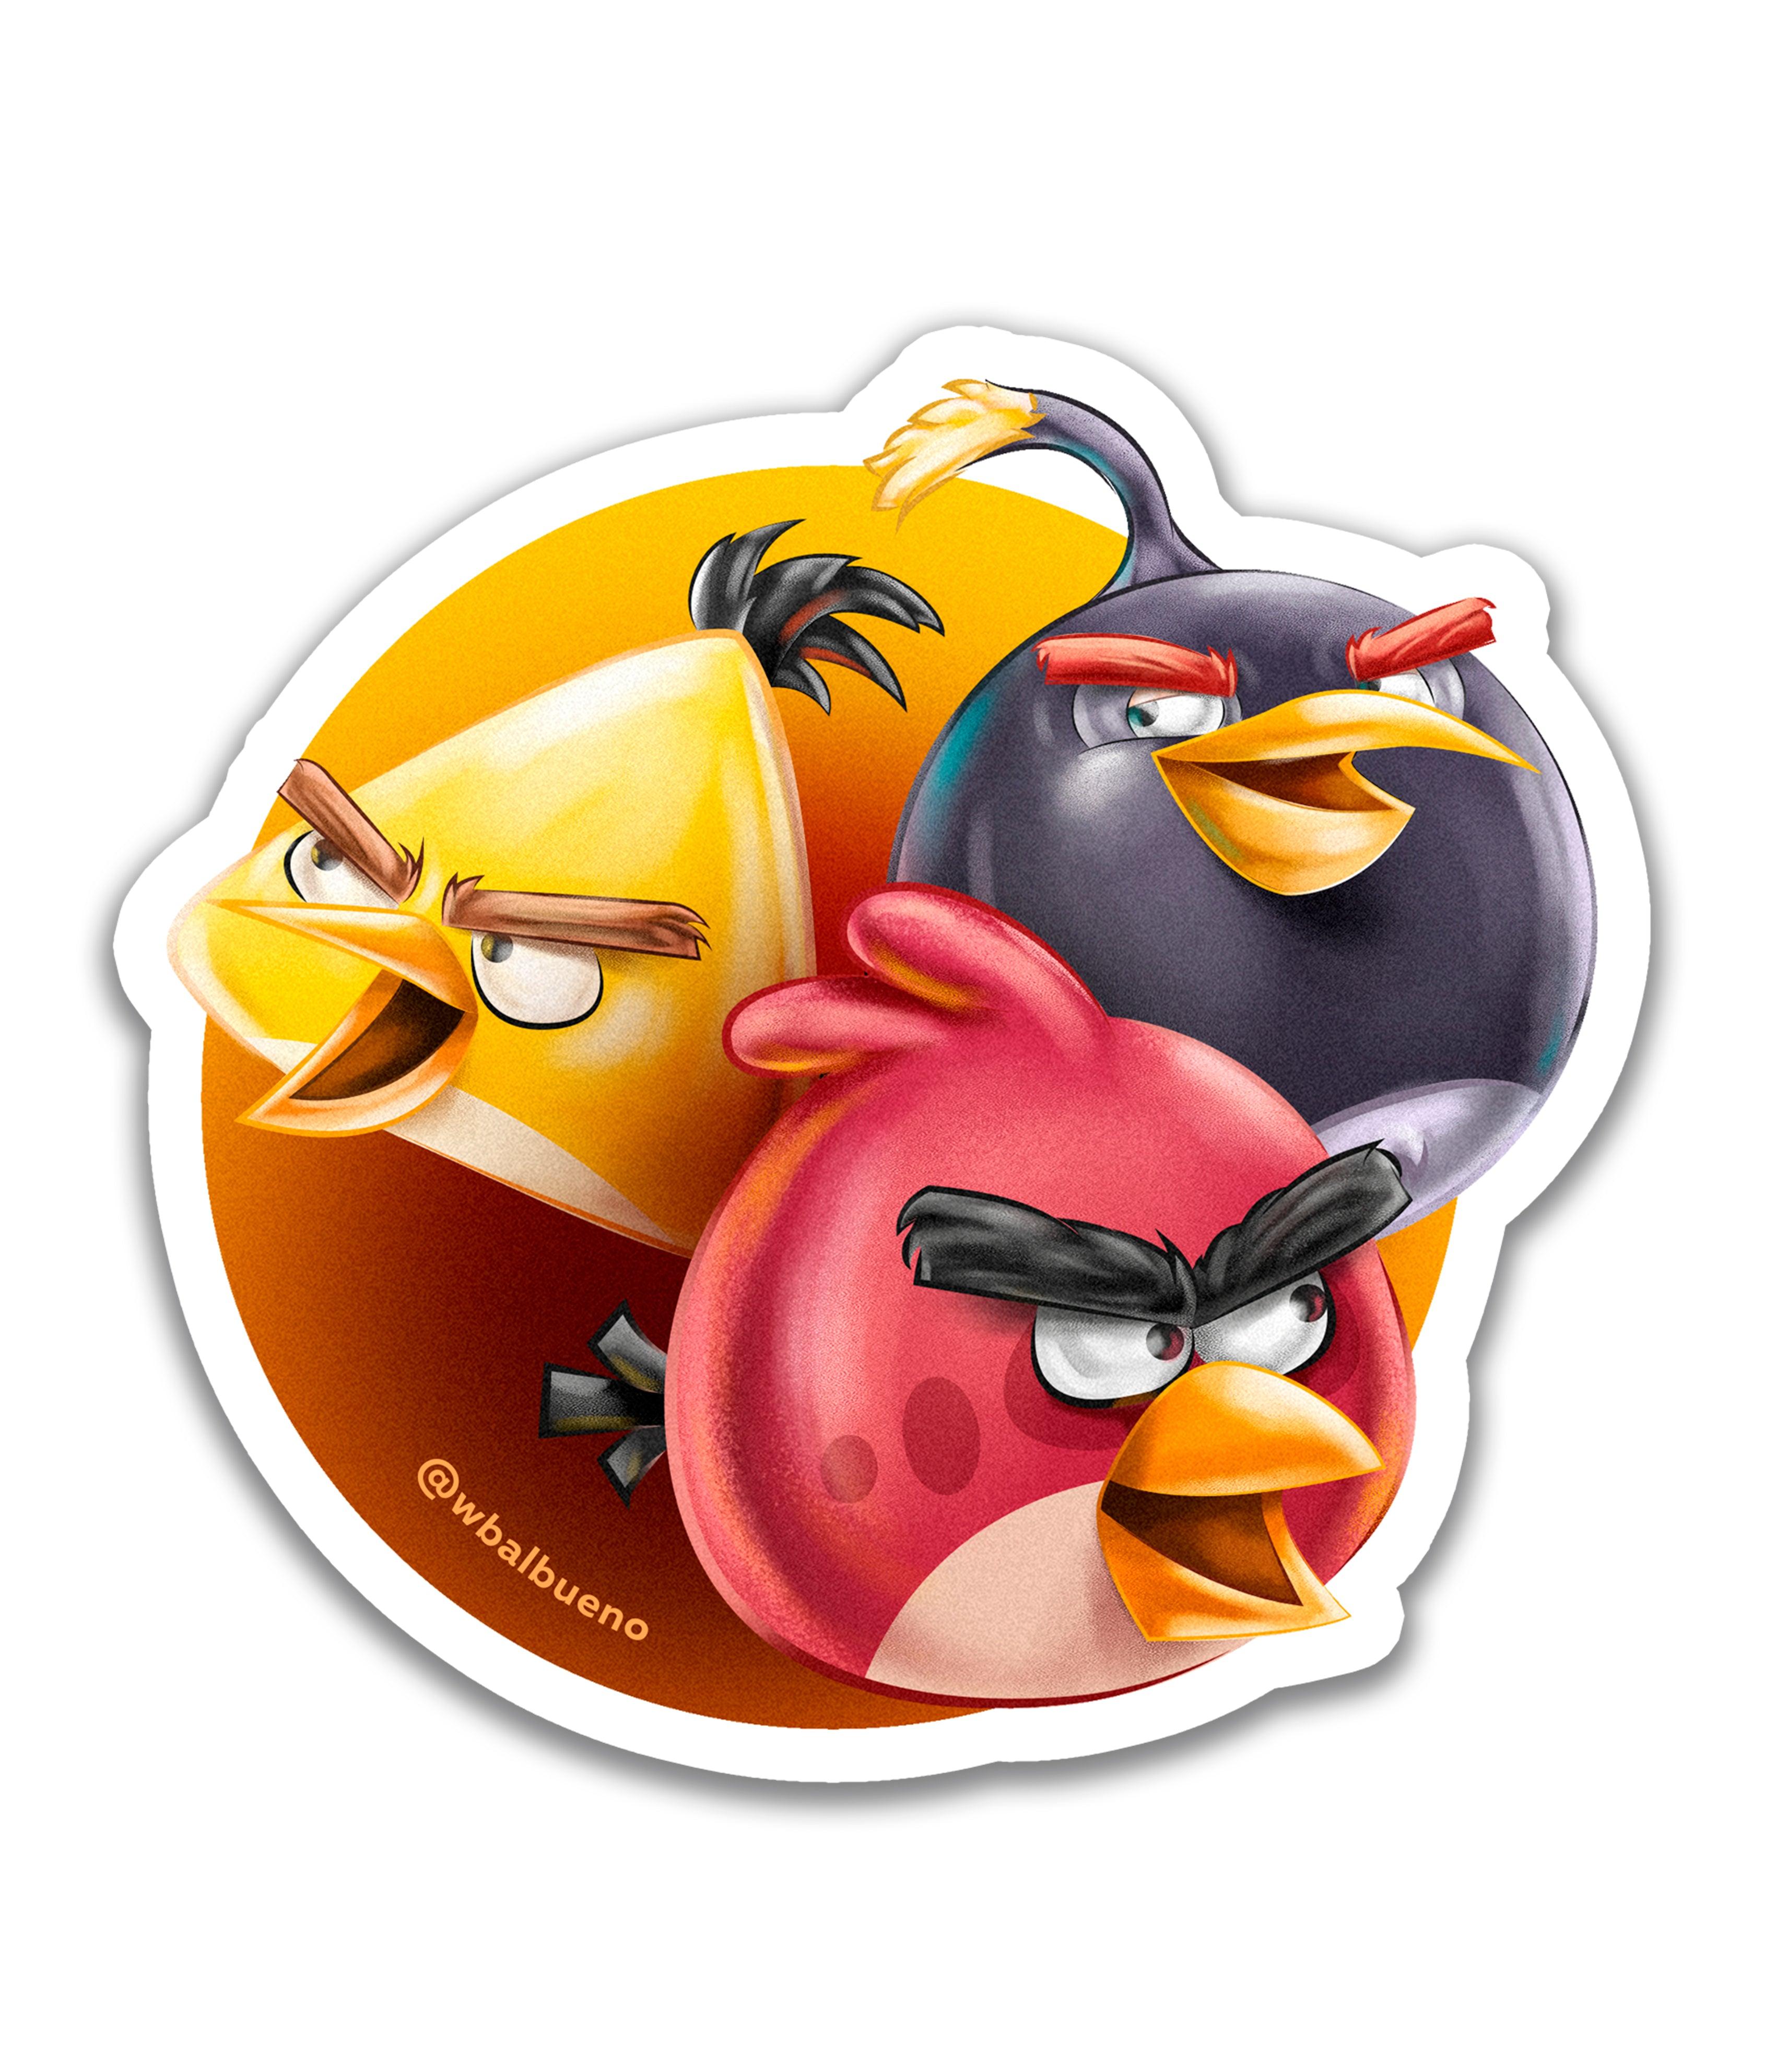 Angry birds - Rei do Sticker